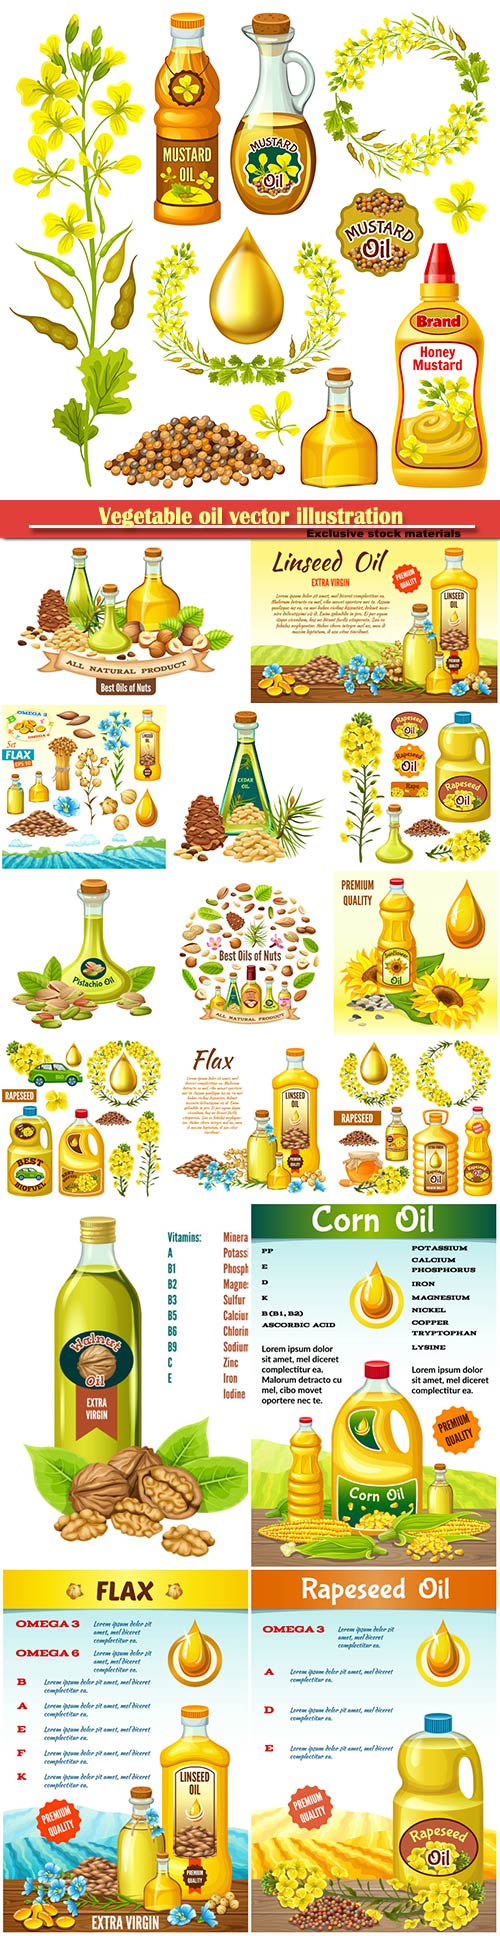 Vegetable oil vector illustration